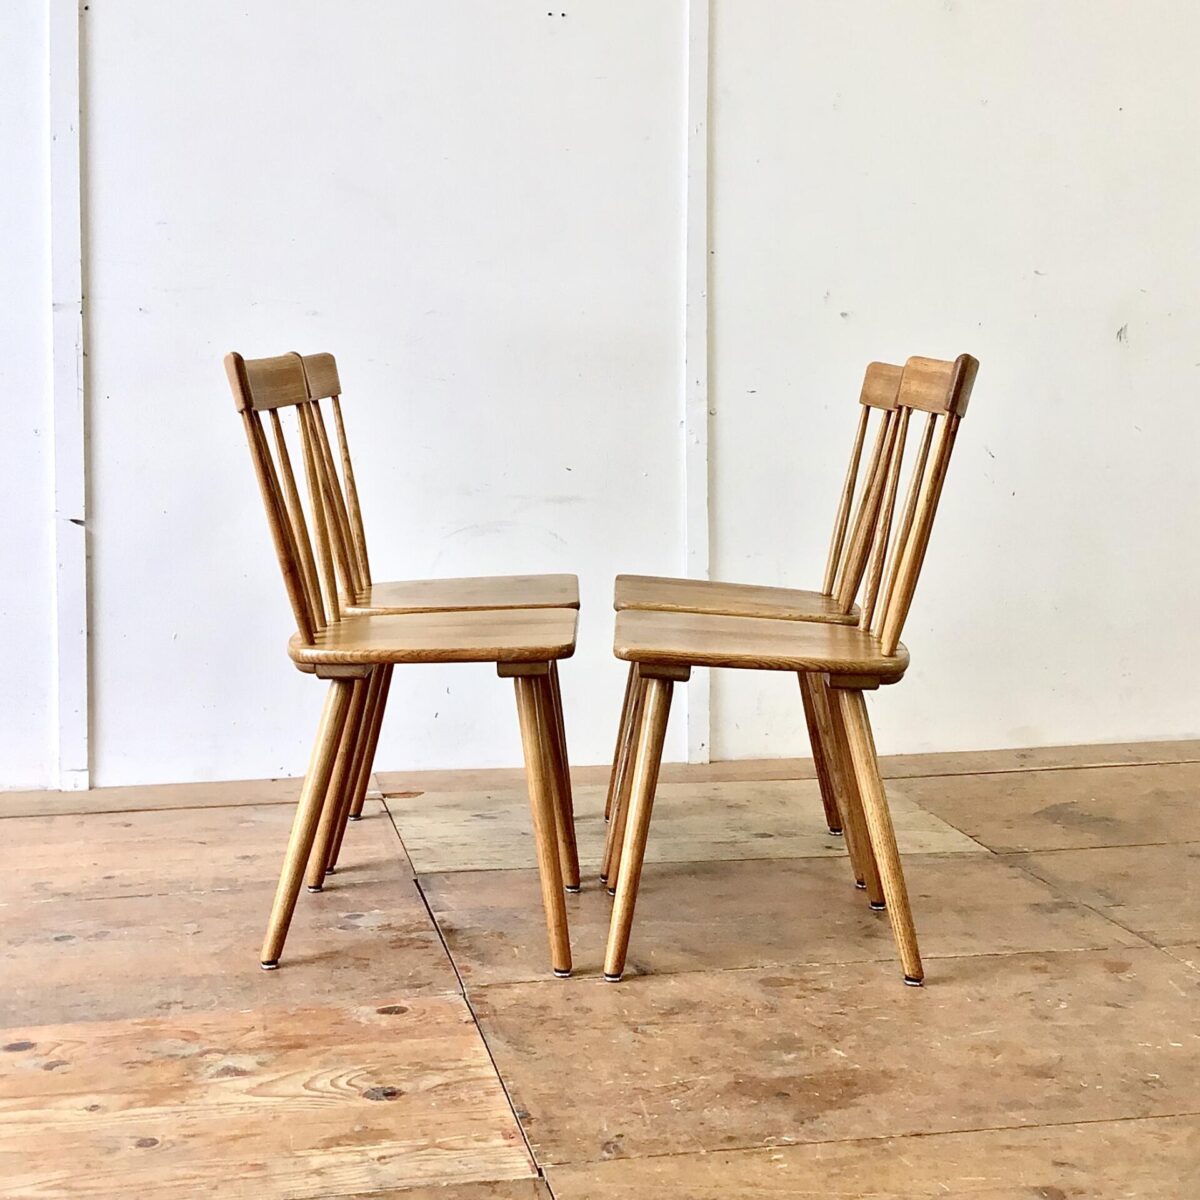 4er Set Sprossenstühle aus Eschenholz von Victoria Möbel. Sitzhöhe 45.5cm. Feingliedrige Bequeme Esszimmer Stühle (Stabellen). Eine schöne Abwechslung im Vergleich zu anderen Schweizer Holzstühlen, welche meistens aus Buchenholz sind.